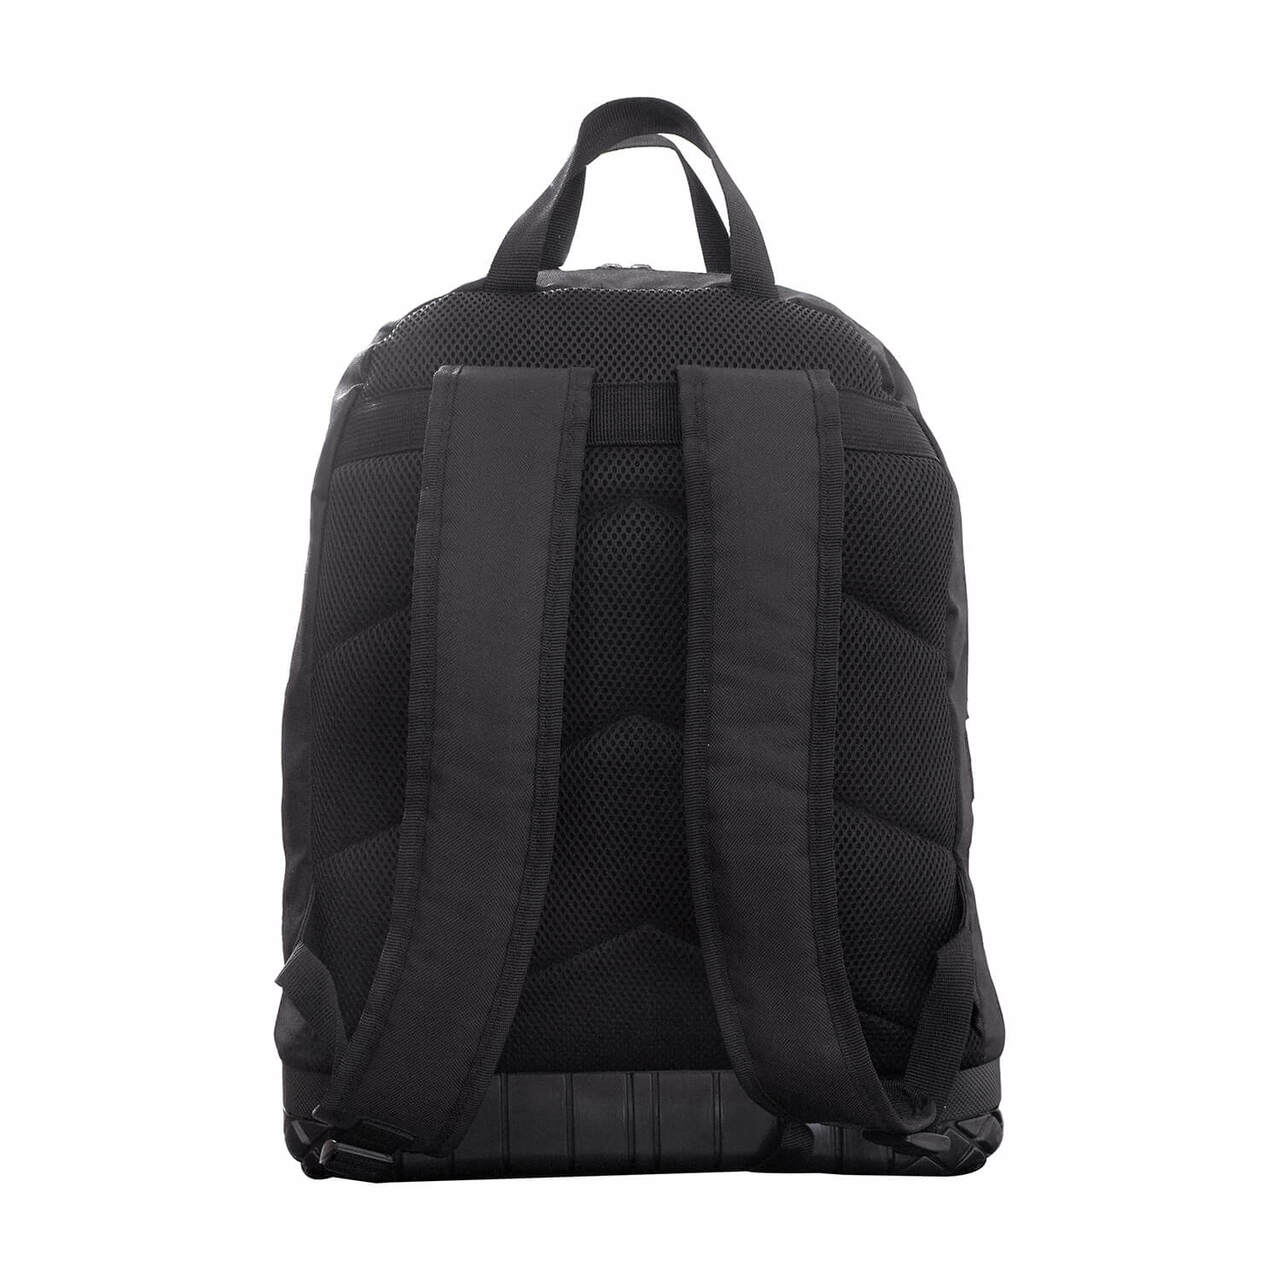 Kansas Jayhawks Tool Bag Backpack